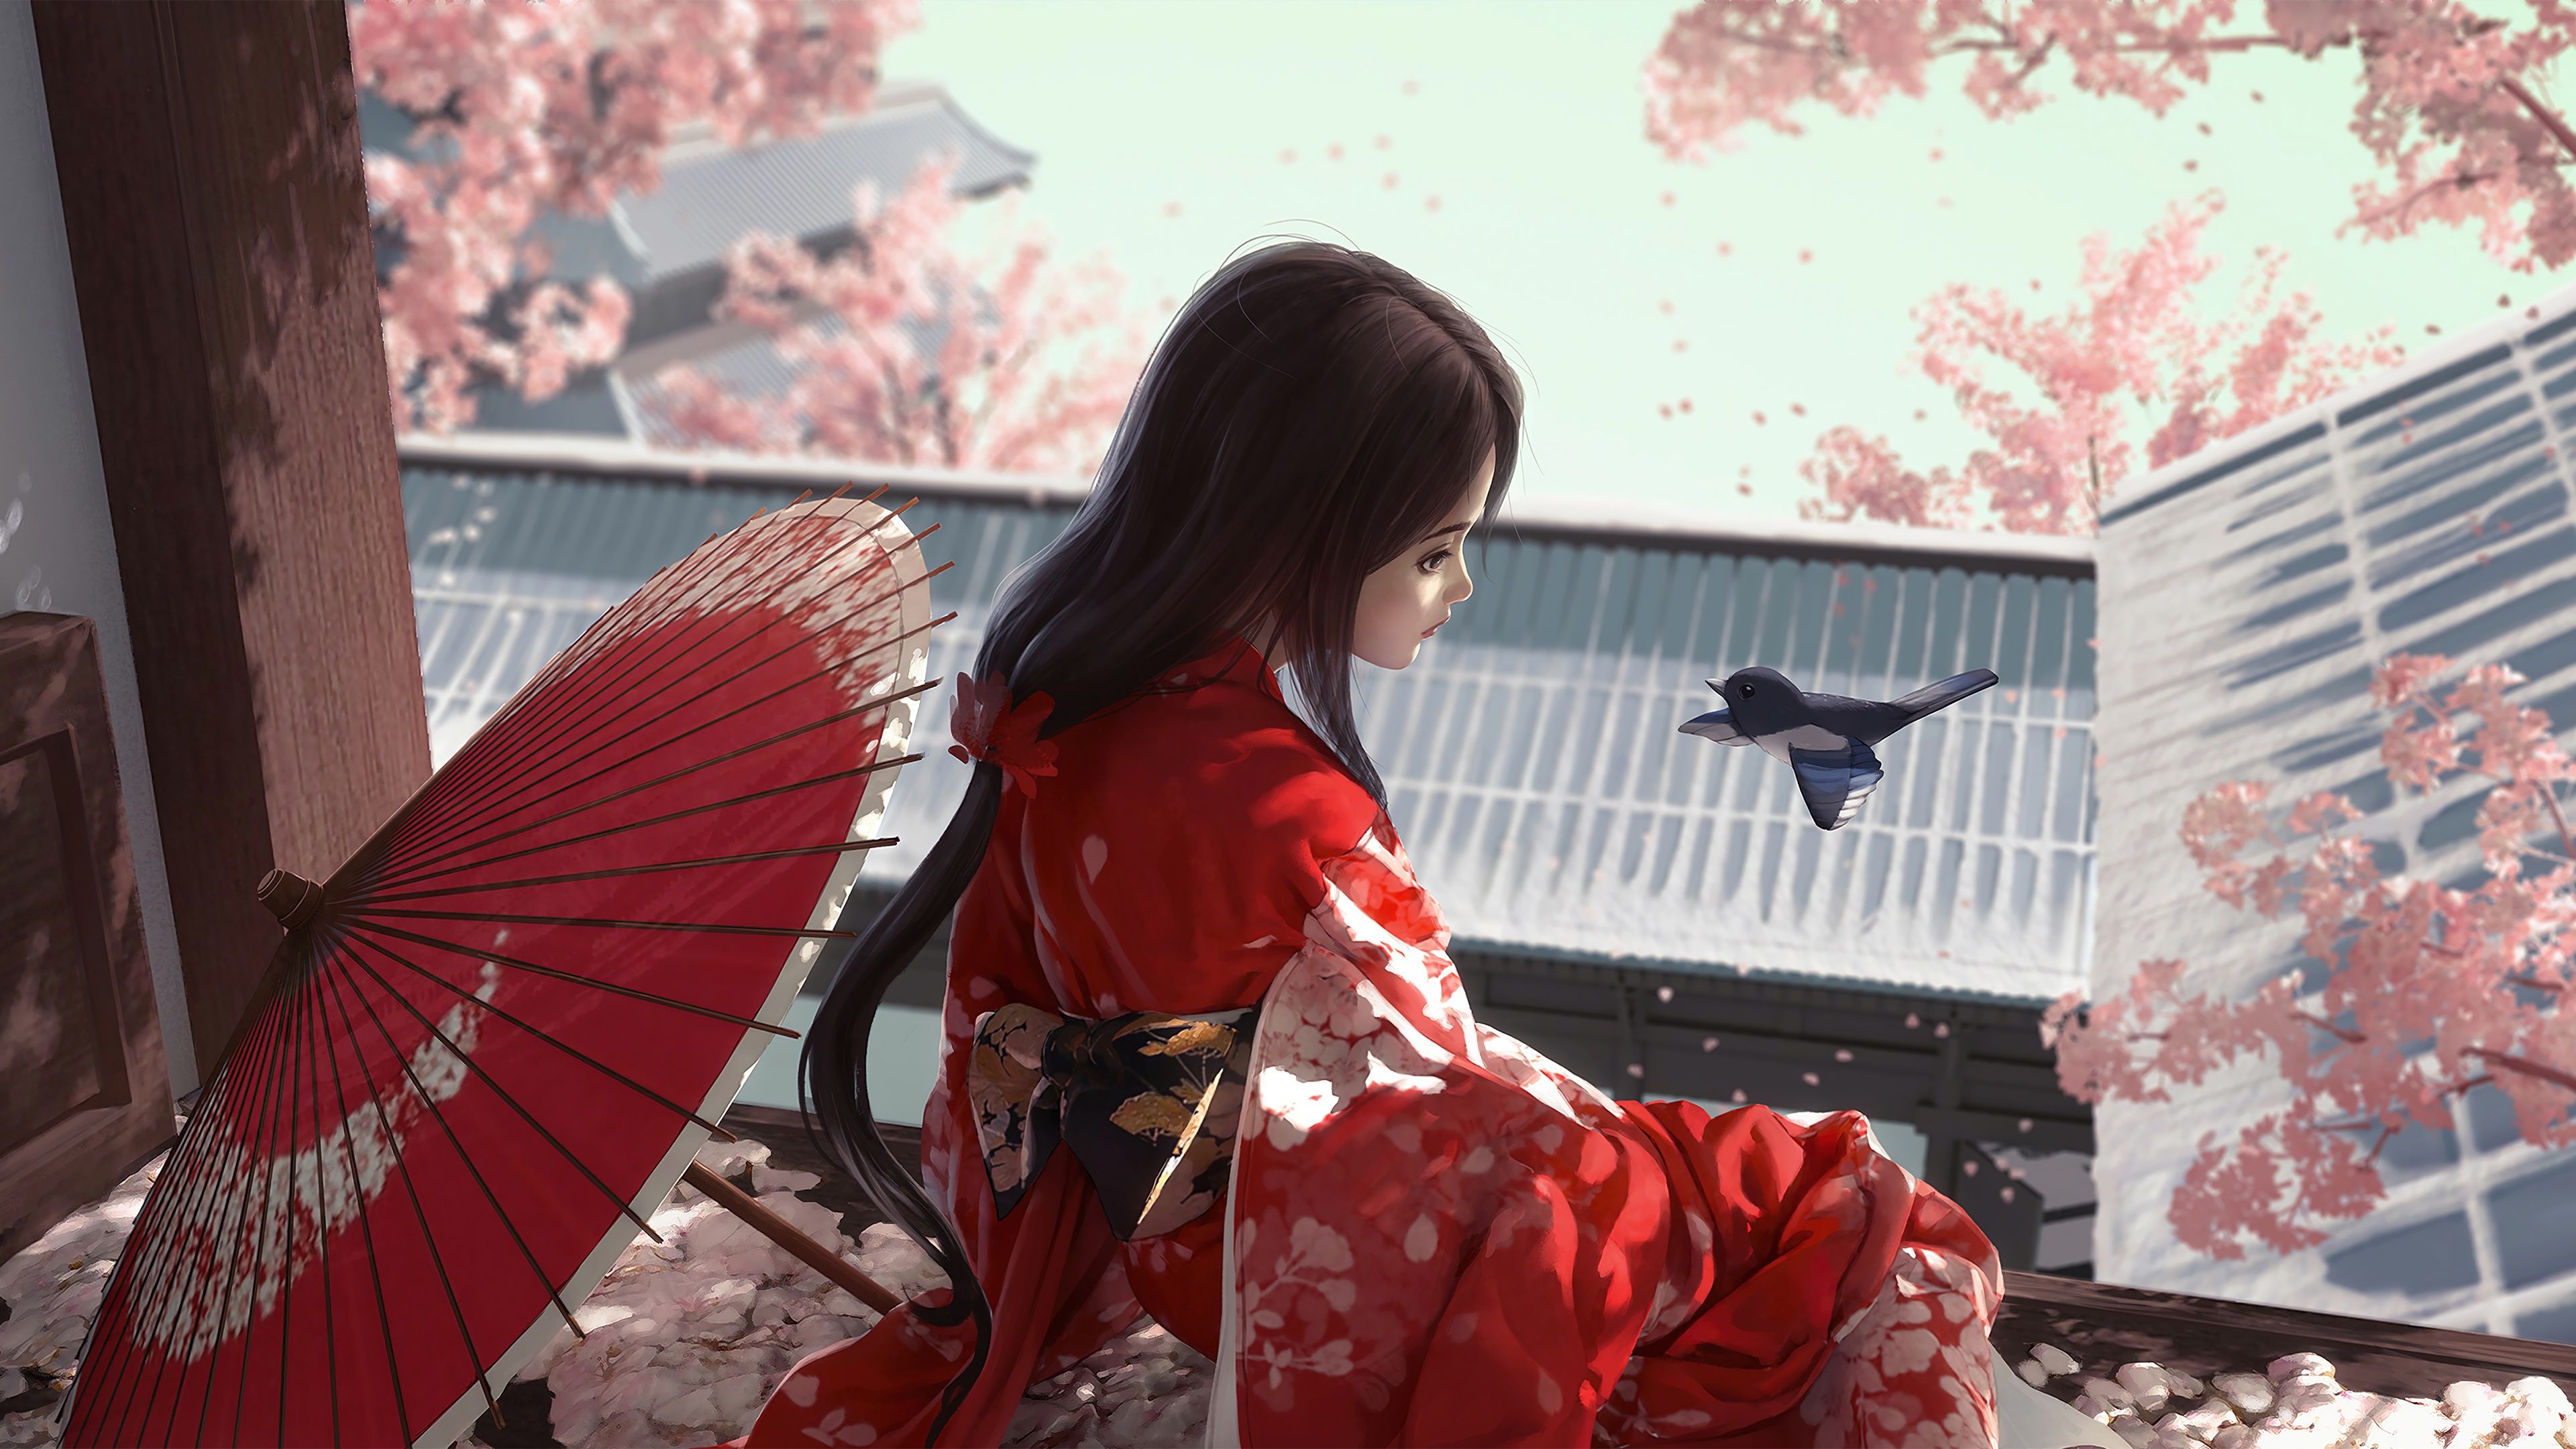 Free download wallpaper Anime, Girl, Umbrella, Kimono on your PC desktop